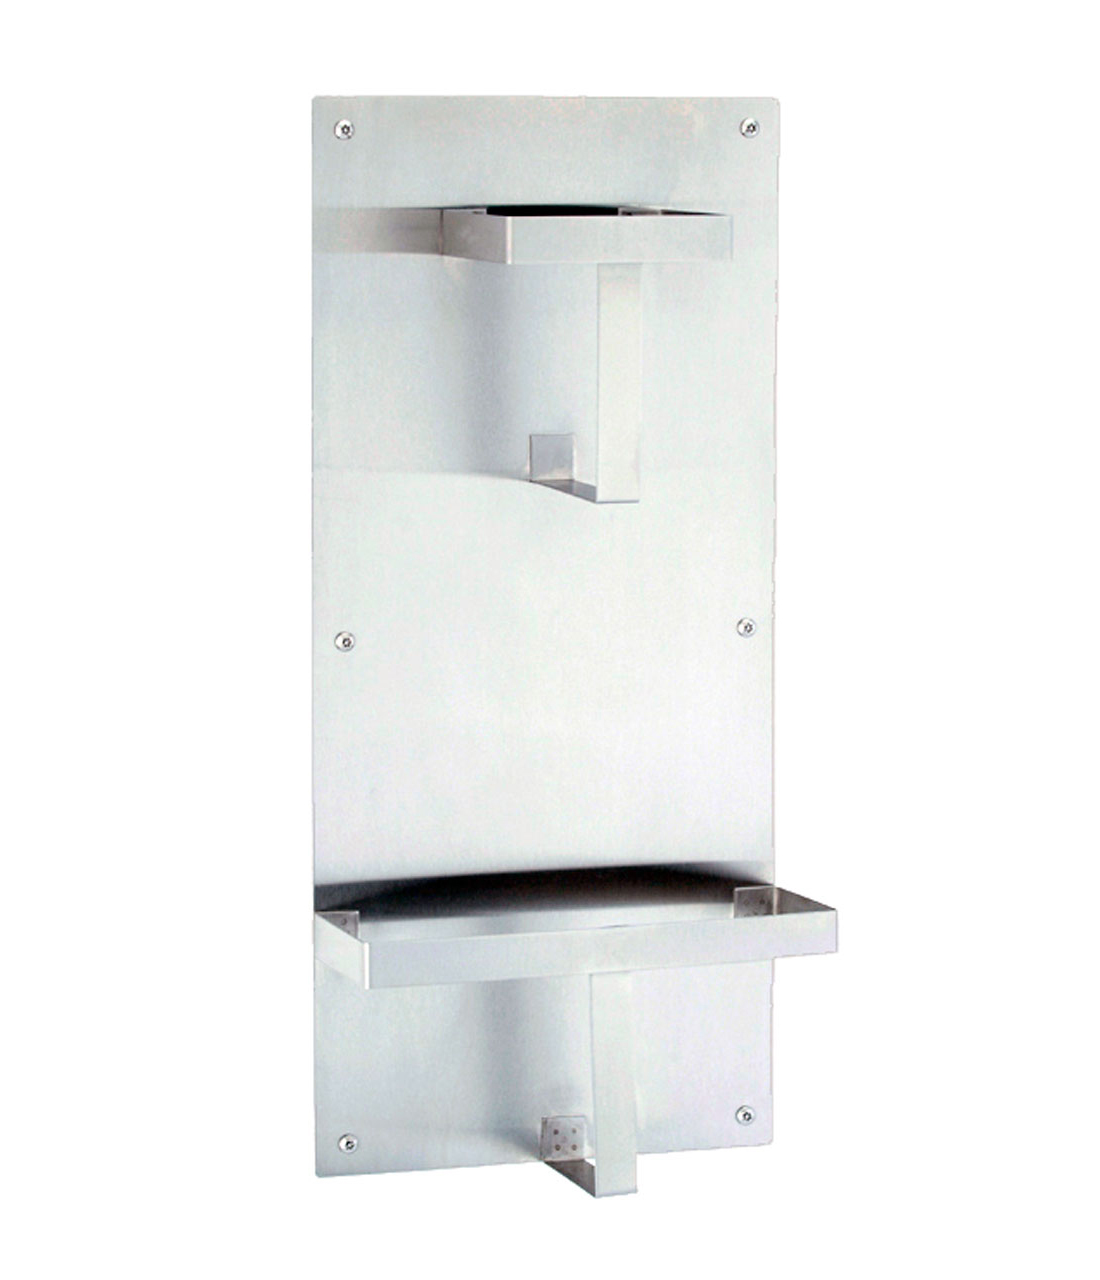 Surface-Mounted Bed Pan Rack - (Model #: bp-1)-image